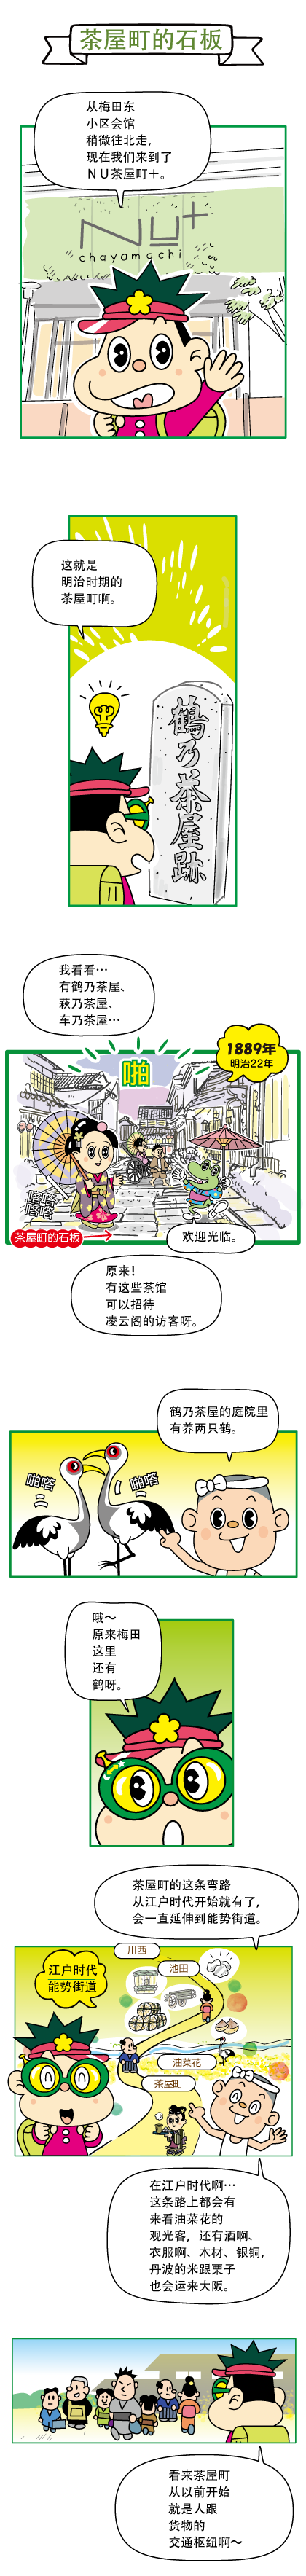 关于鹤乃茶屋的石板路历史的漫画 1